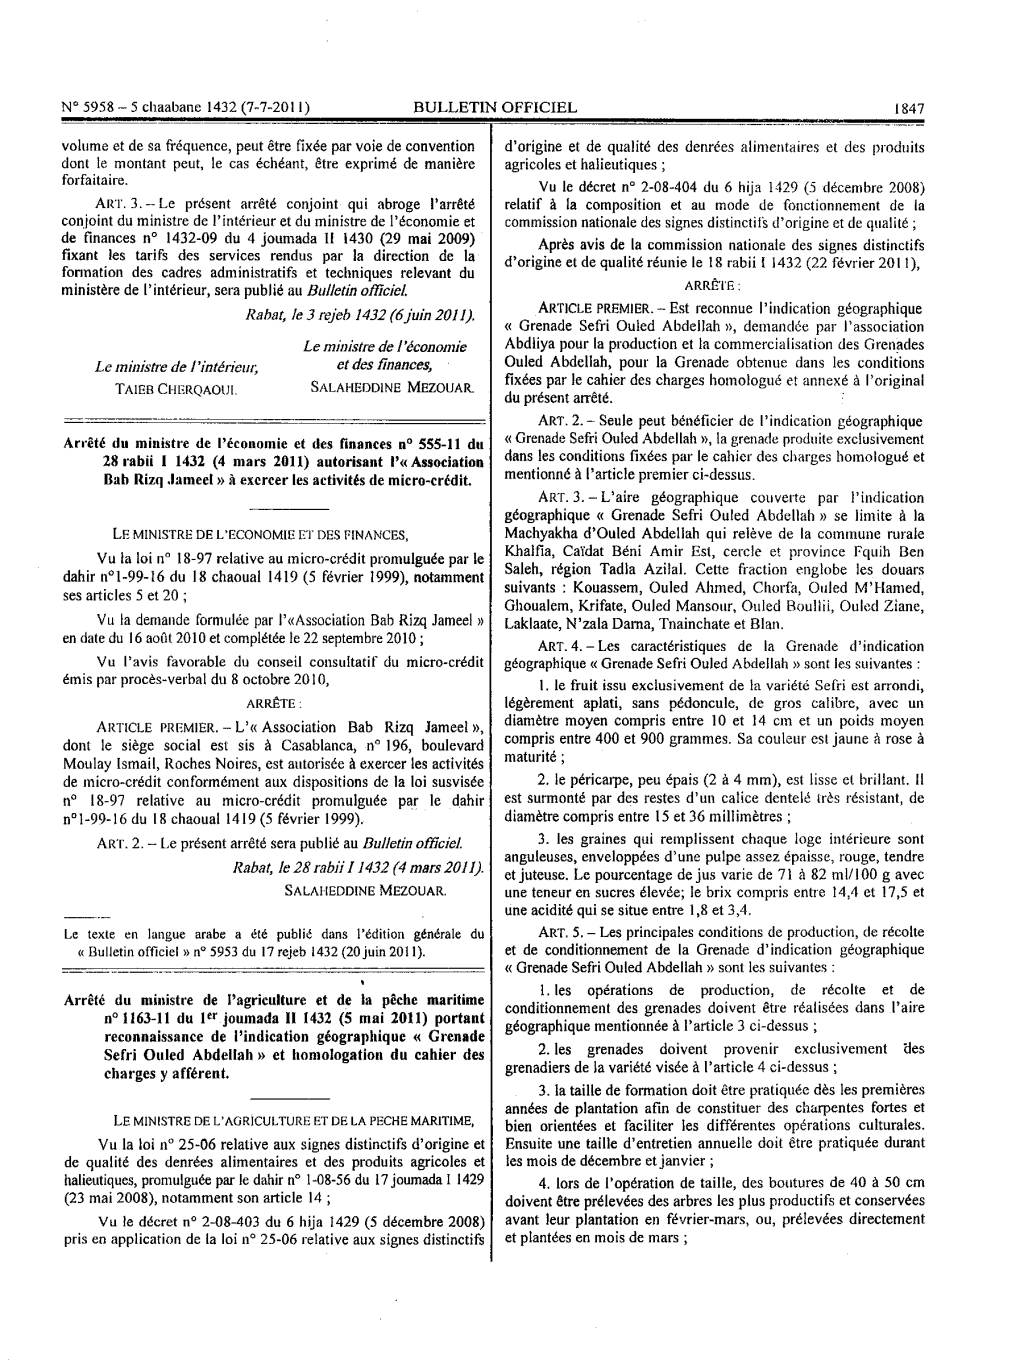 Arrêté Du Ministre De L'agriculture Et De La Pêche Maritime N° 1163-11 Du 1Er Joumada II 1432